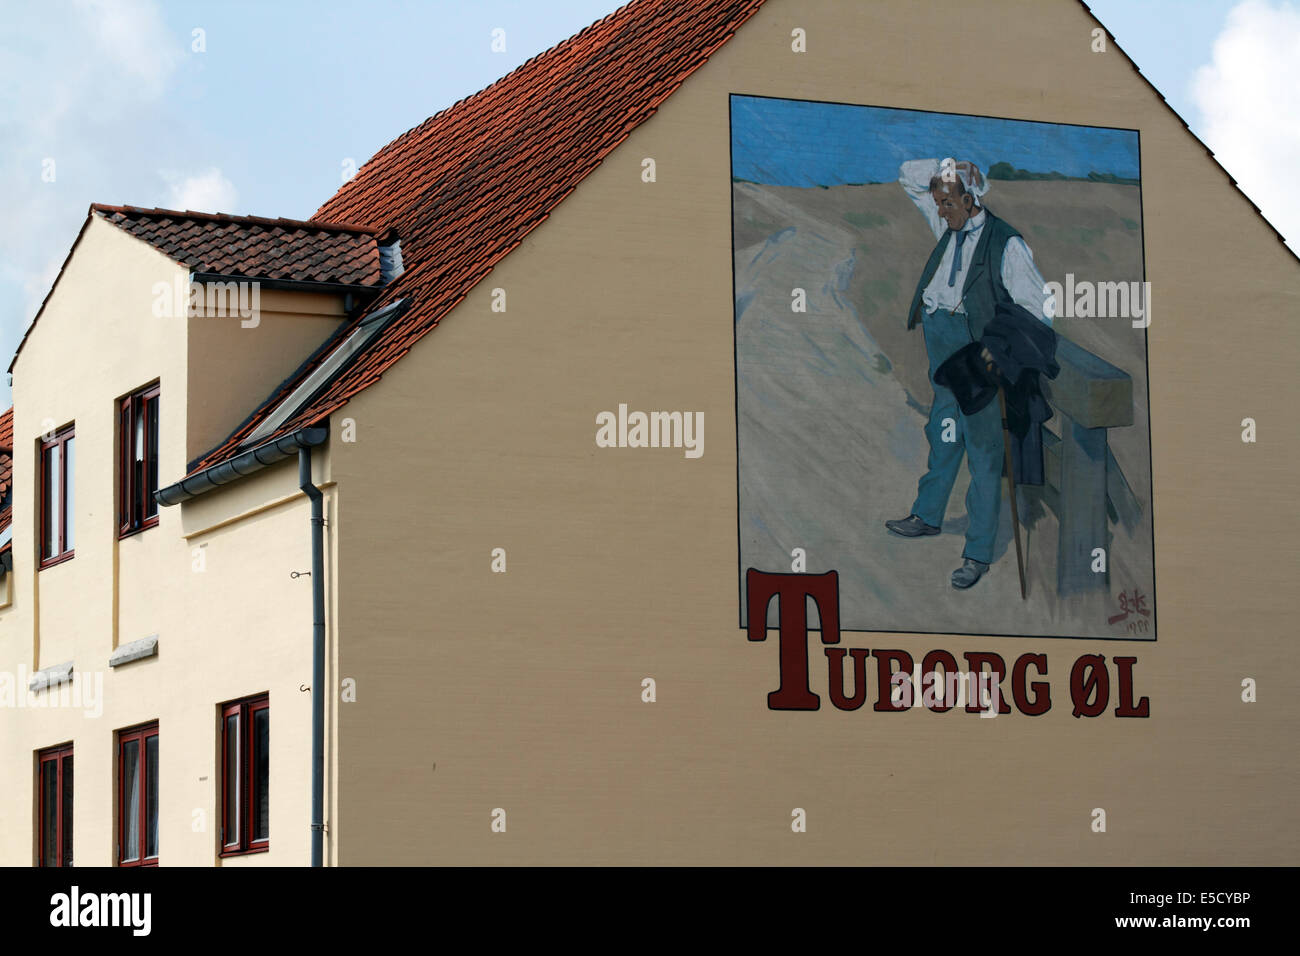 L'homme assoiffé de Tuborg, gable à partir de l'affiche murale peinte par Erik Henningsen et utilisé pour la publicité de la bière Tuborg depuis 1900 Banque D'Images